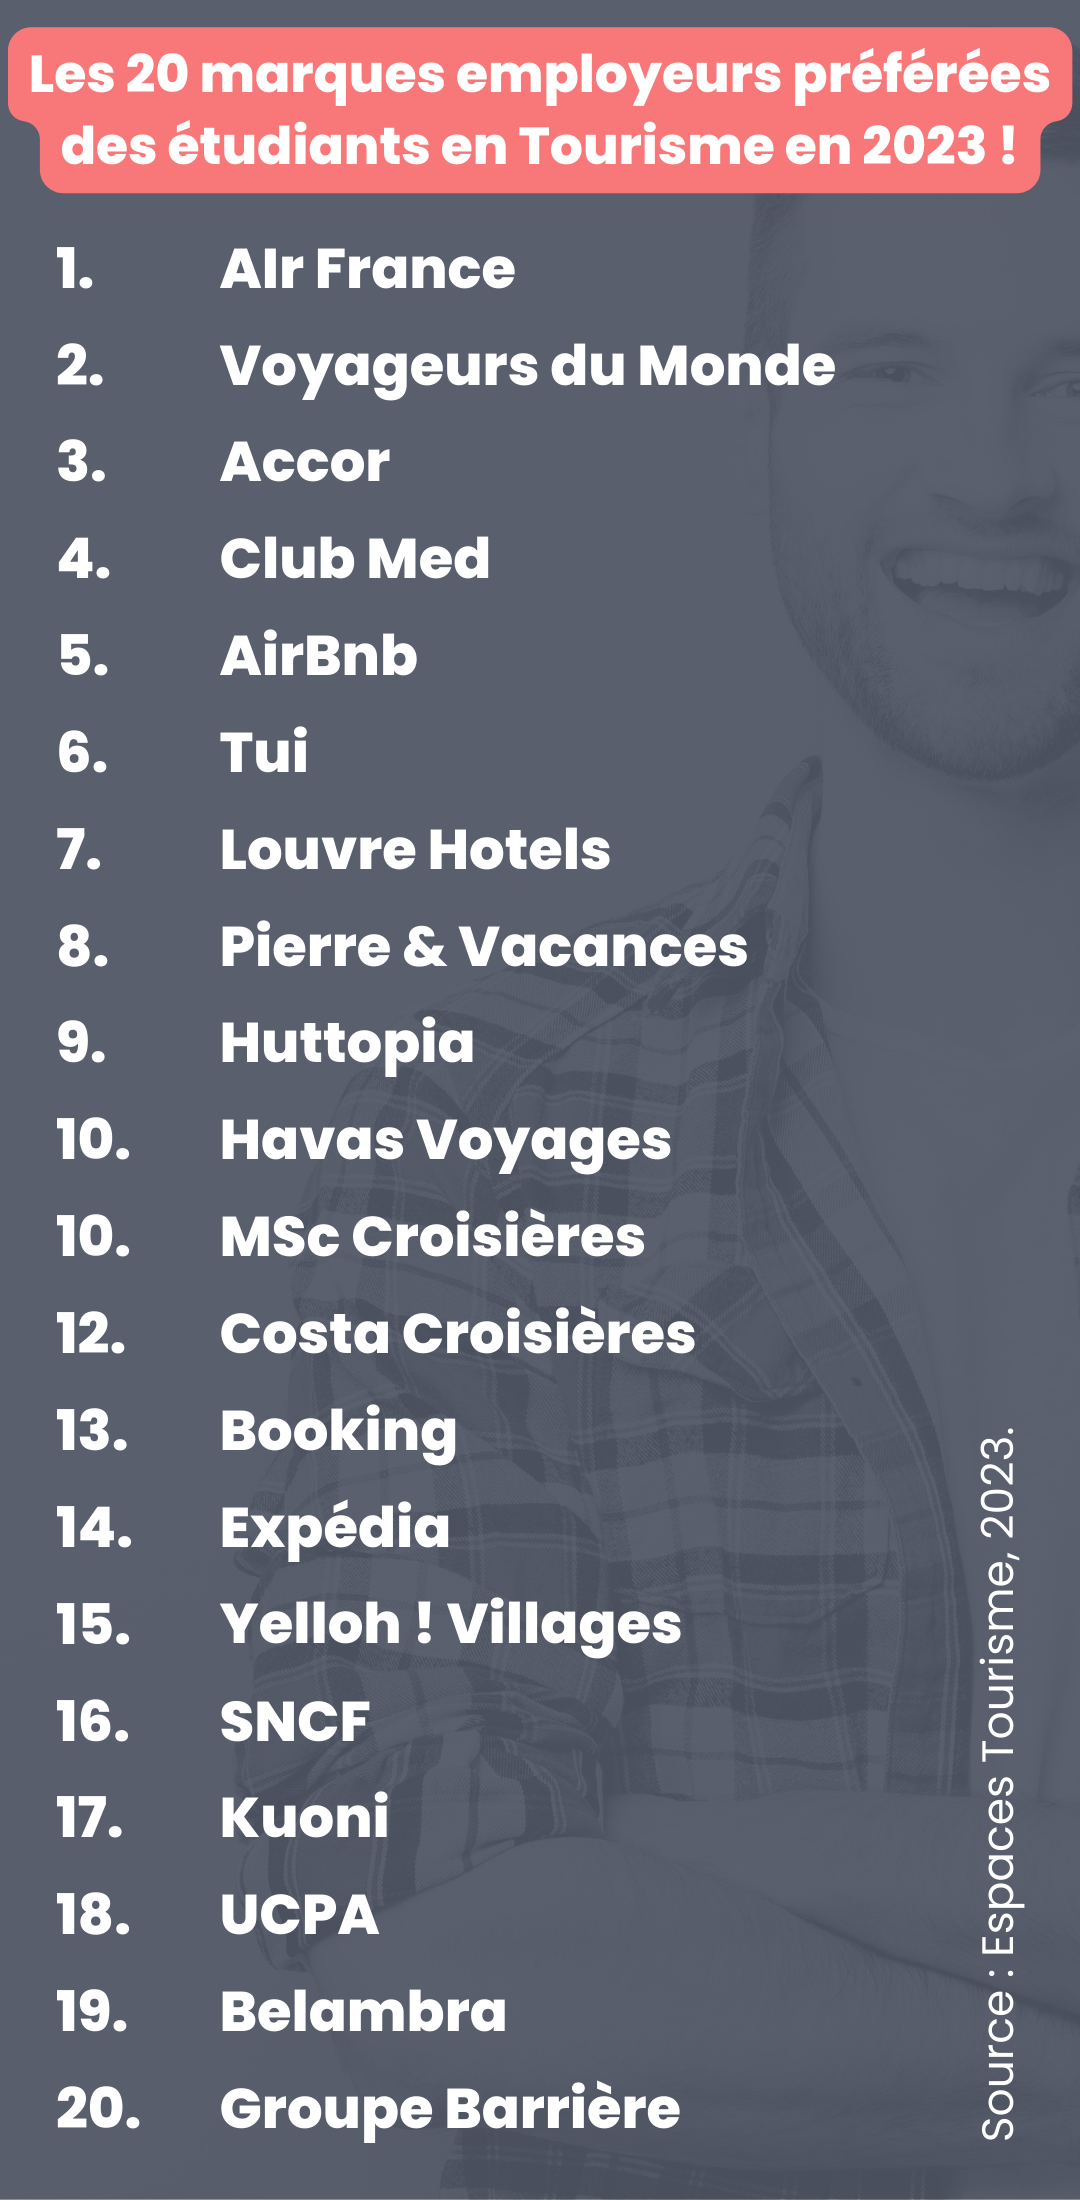 Les 20 marques employeurs préférées des étudiants en Tourisme en 2023 !